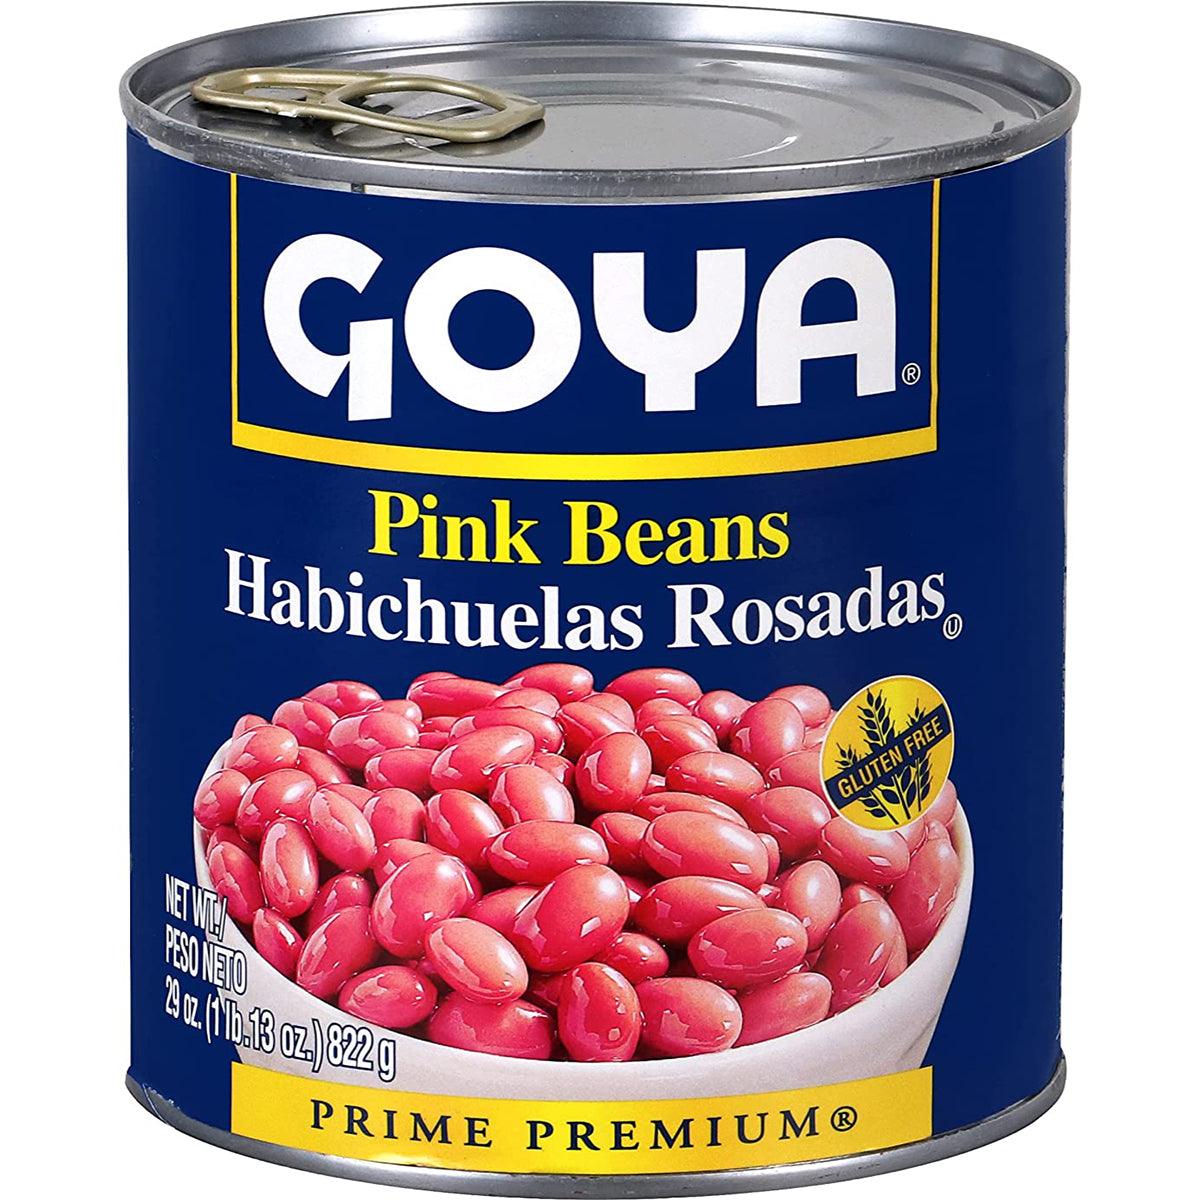 Goya Pink Beans 29 oz